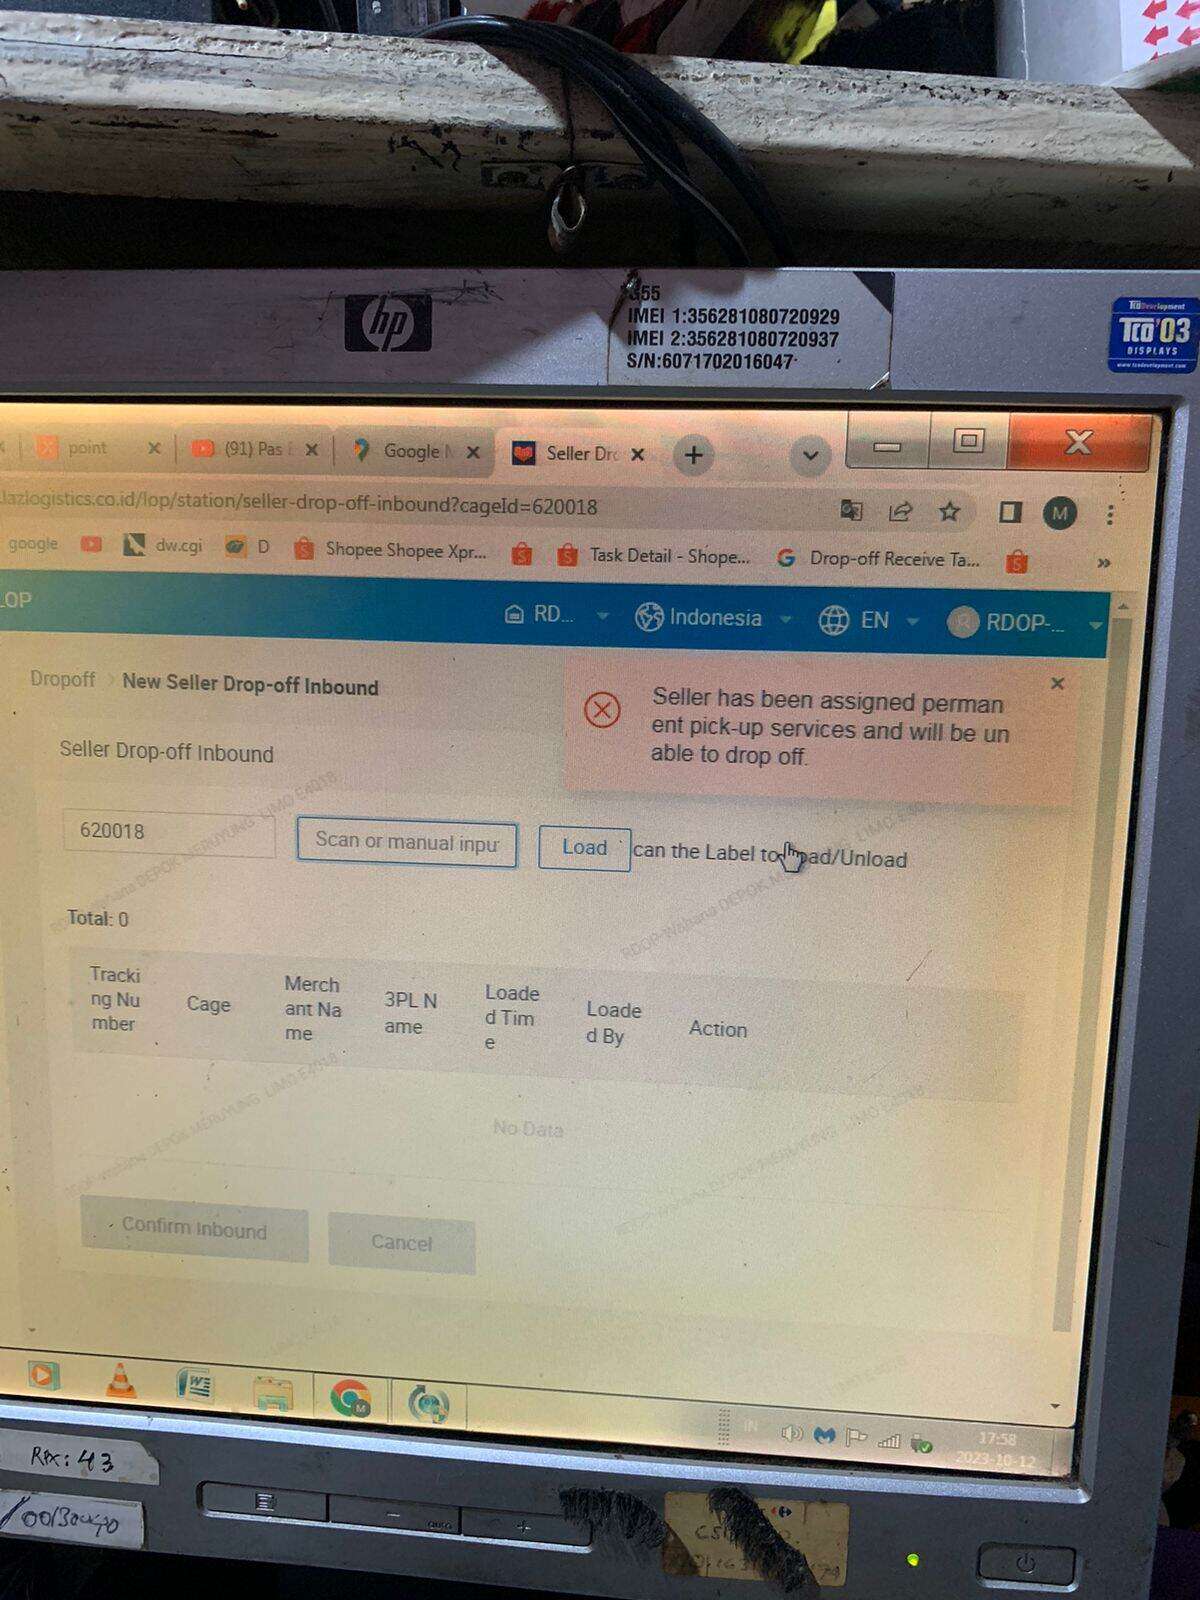 screenshot layar di tempat drop off: paket ga bisa di scan sebab sudah di lock dan harus diambil oleh kurir pickup